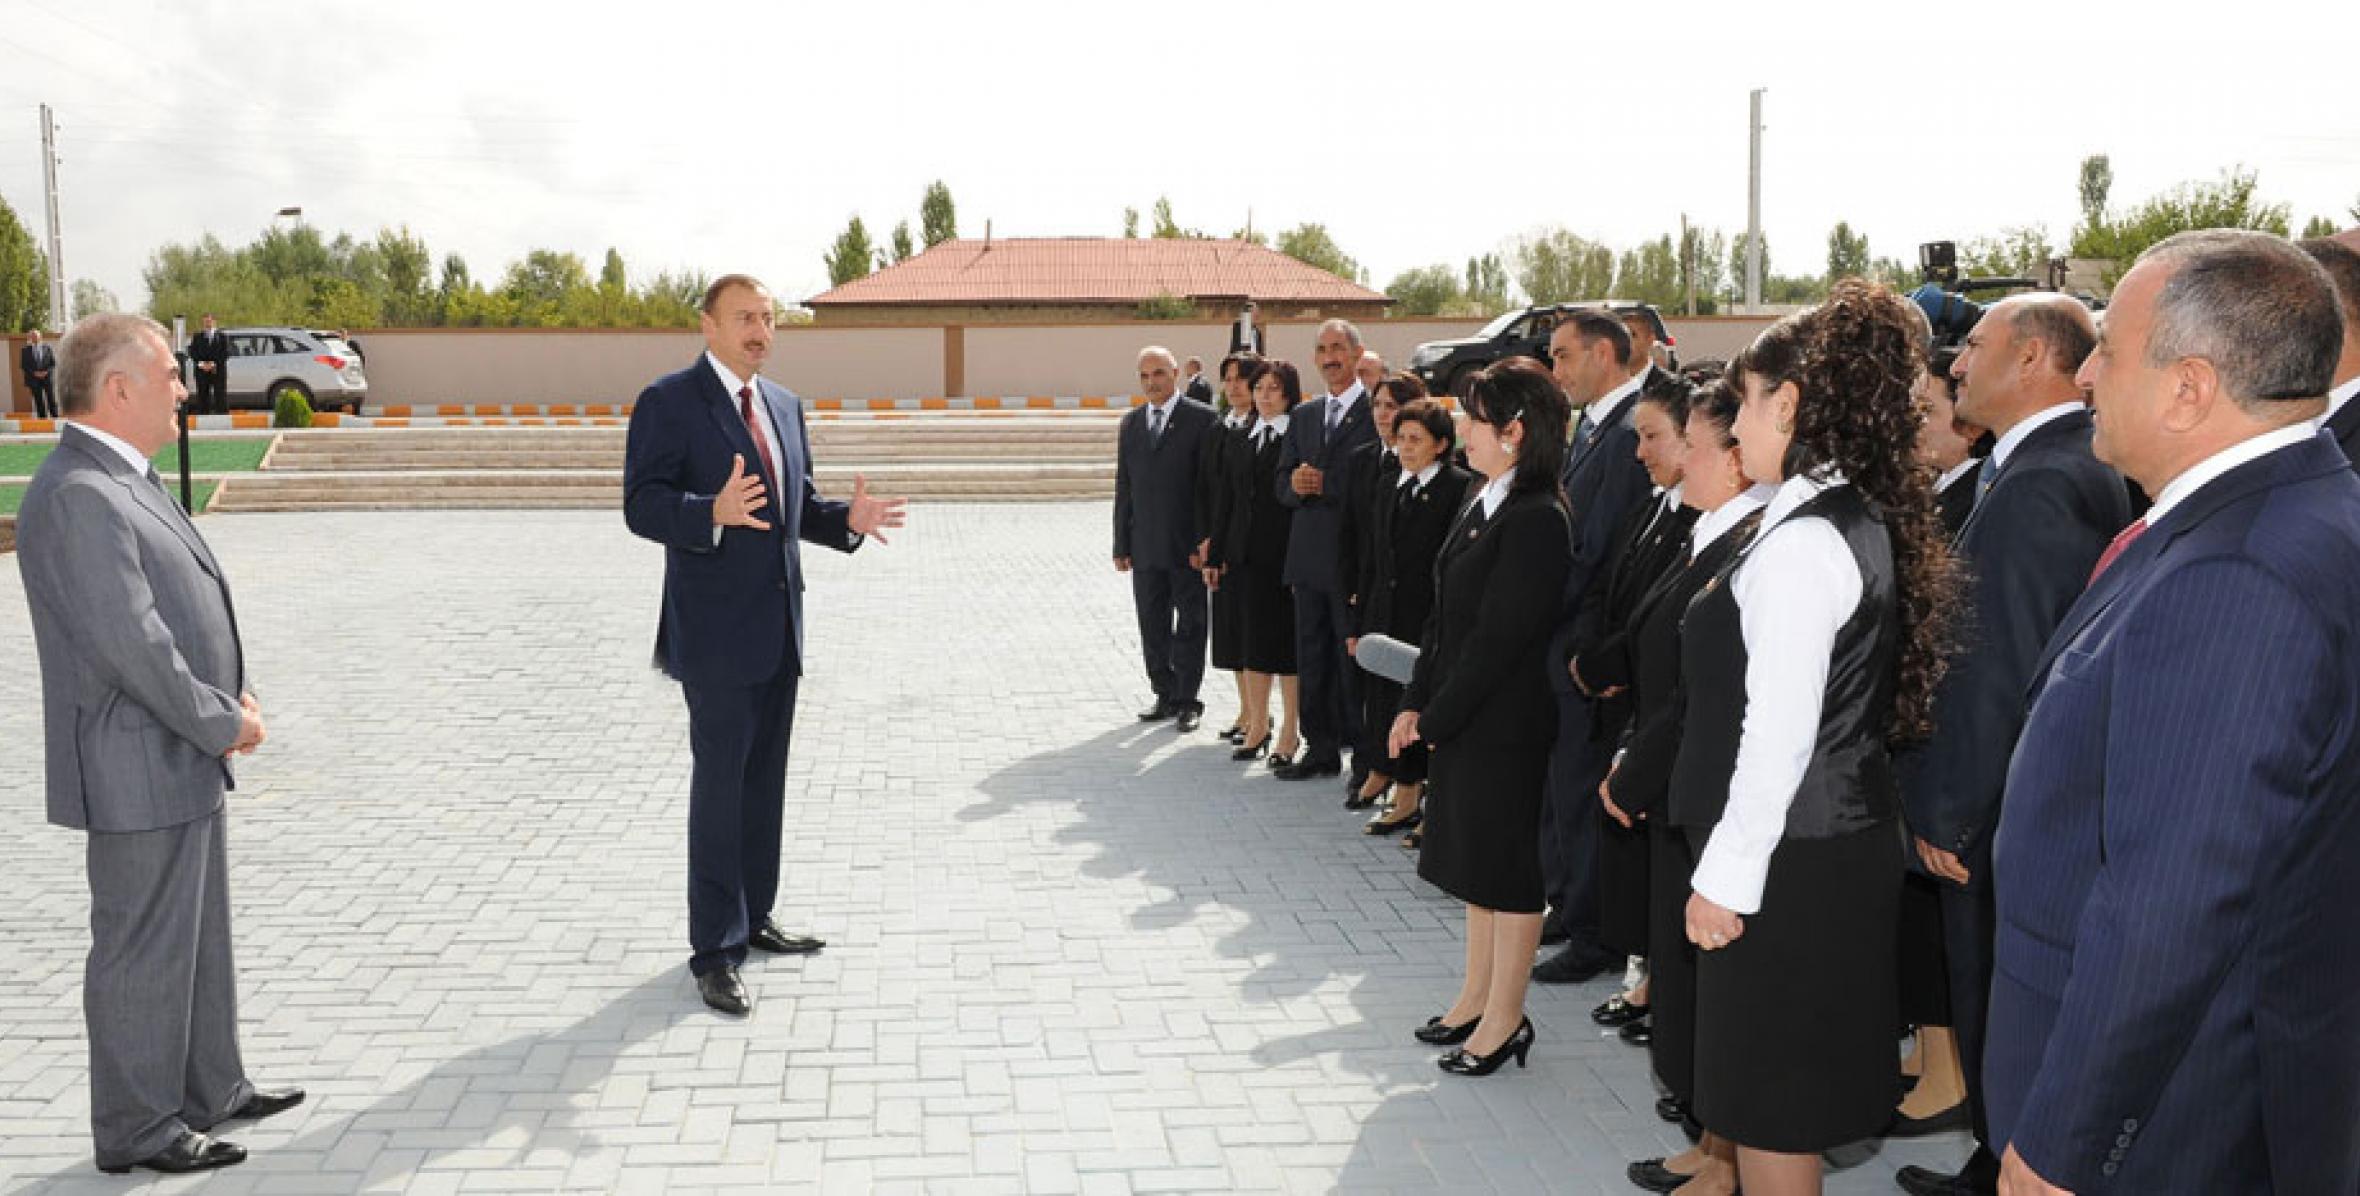 İlham Əliyev Şərur rayonunun Maxta kənd orta məktəbinin yeni binasının açılışında iştirak etmişdir